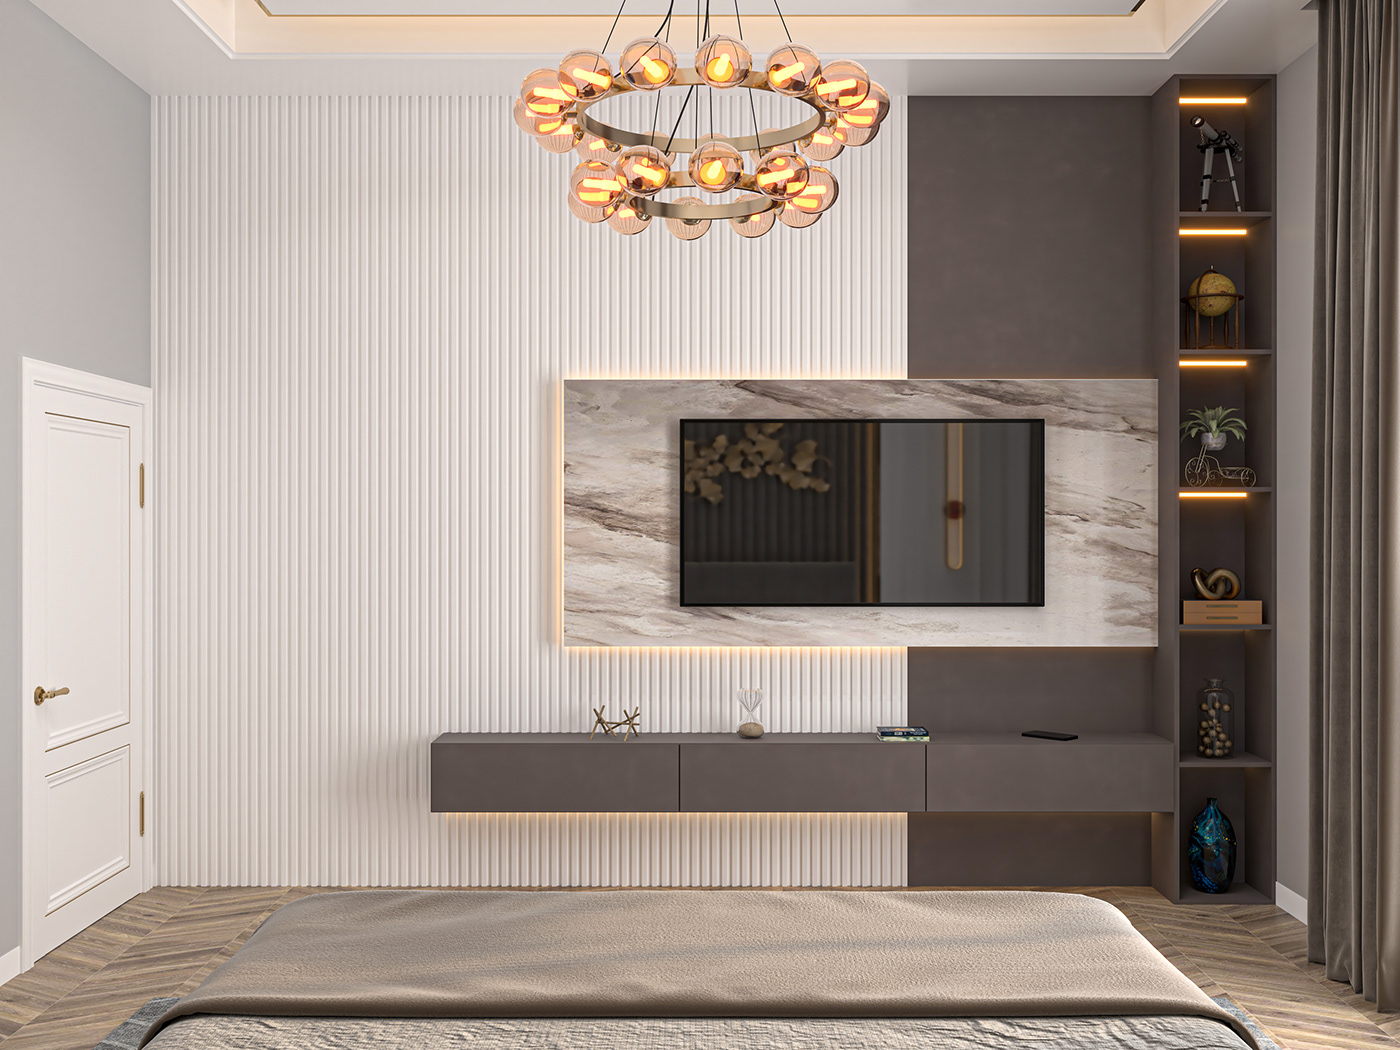 badroom interior design  architecture visualization archviz Interior interiordesign interactive instagram 3ds max